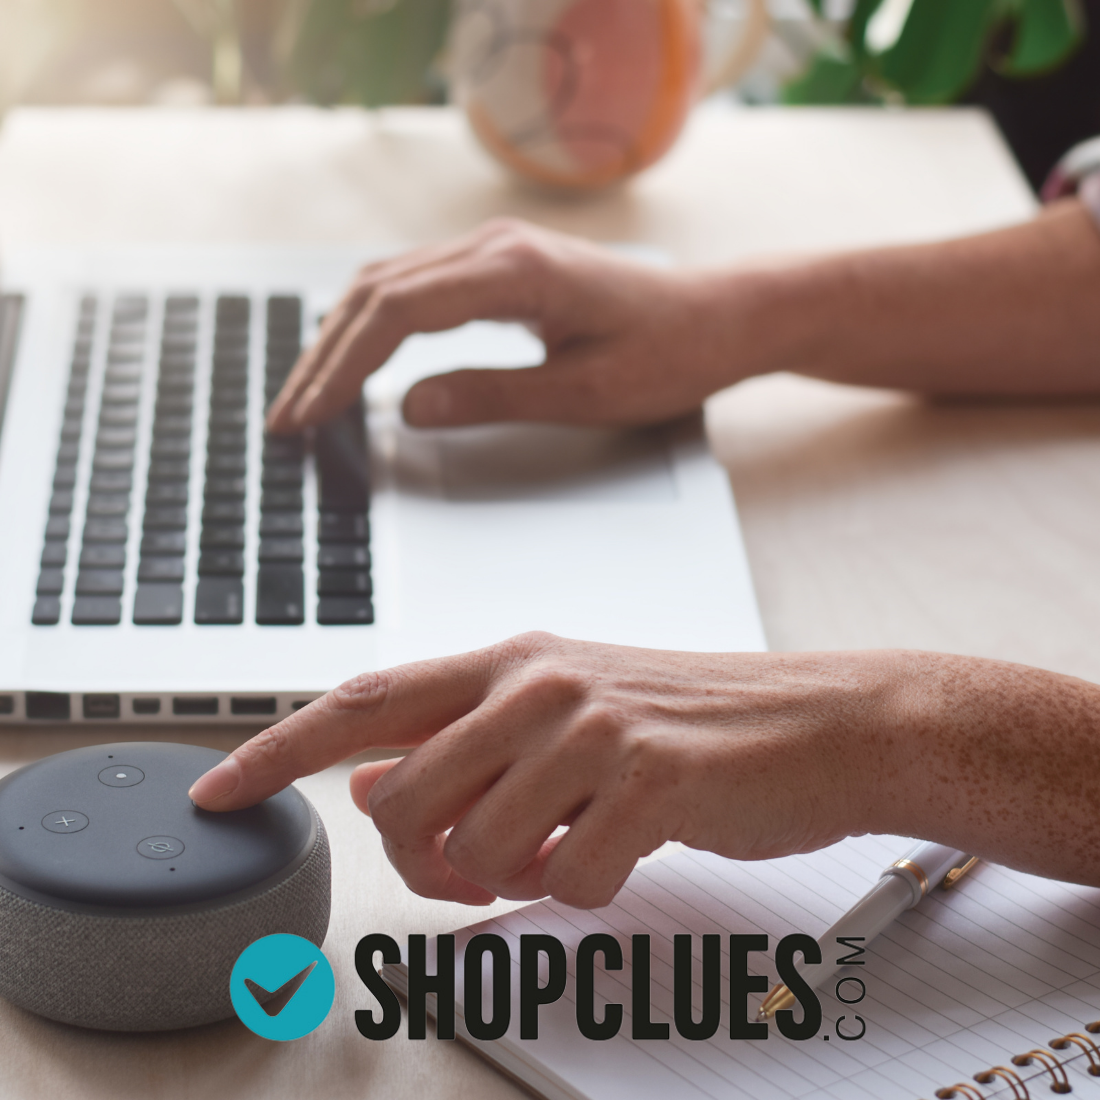 Shopclues Market Place Account Management